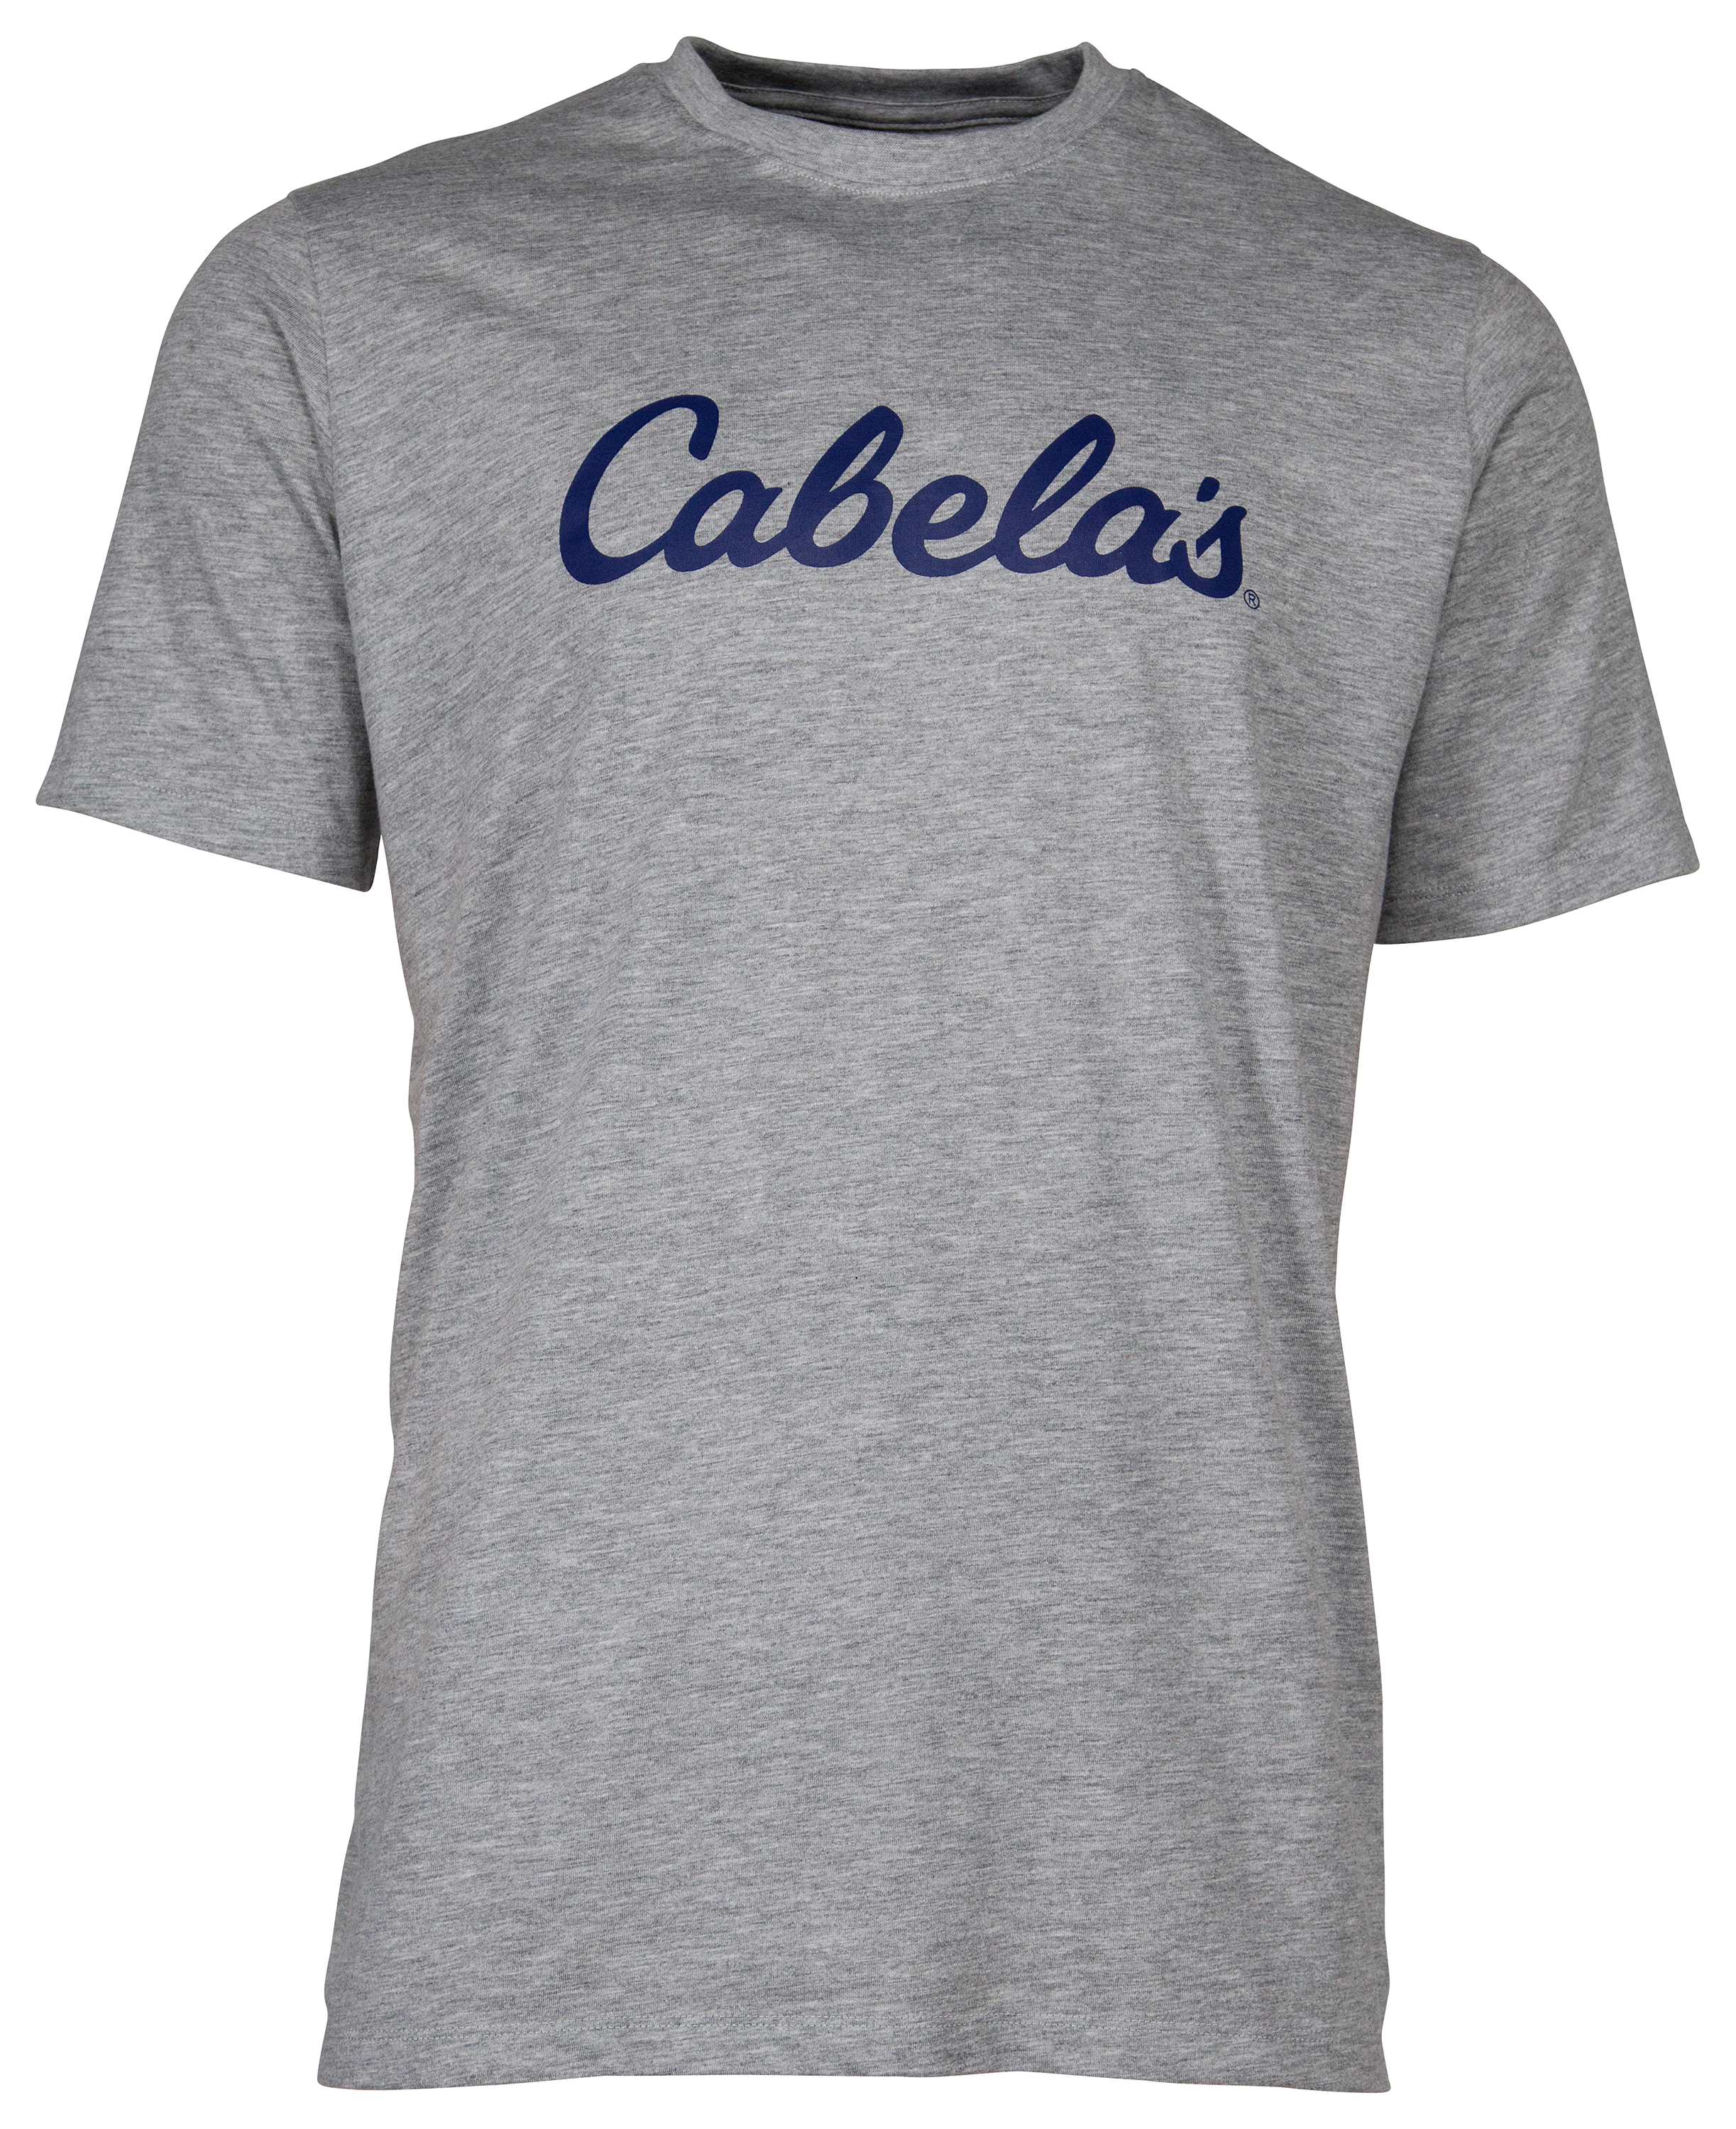 Cabela's Lightweight Performance T-Shirt for Men - TrueTimber Prairie - 3XL